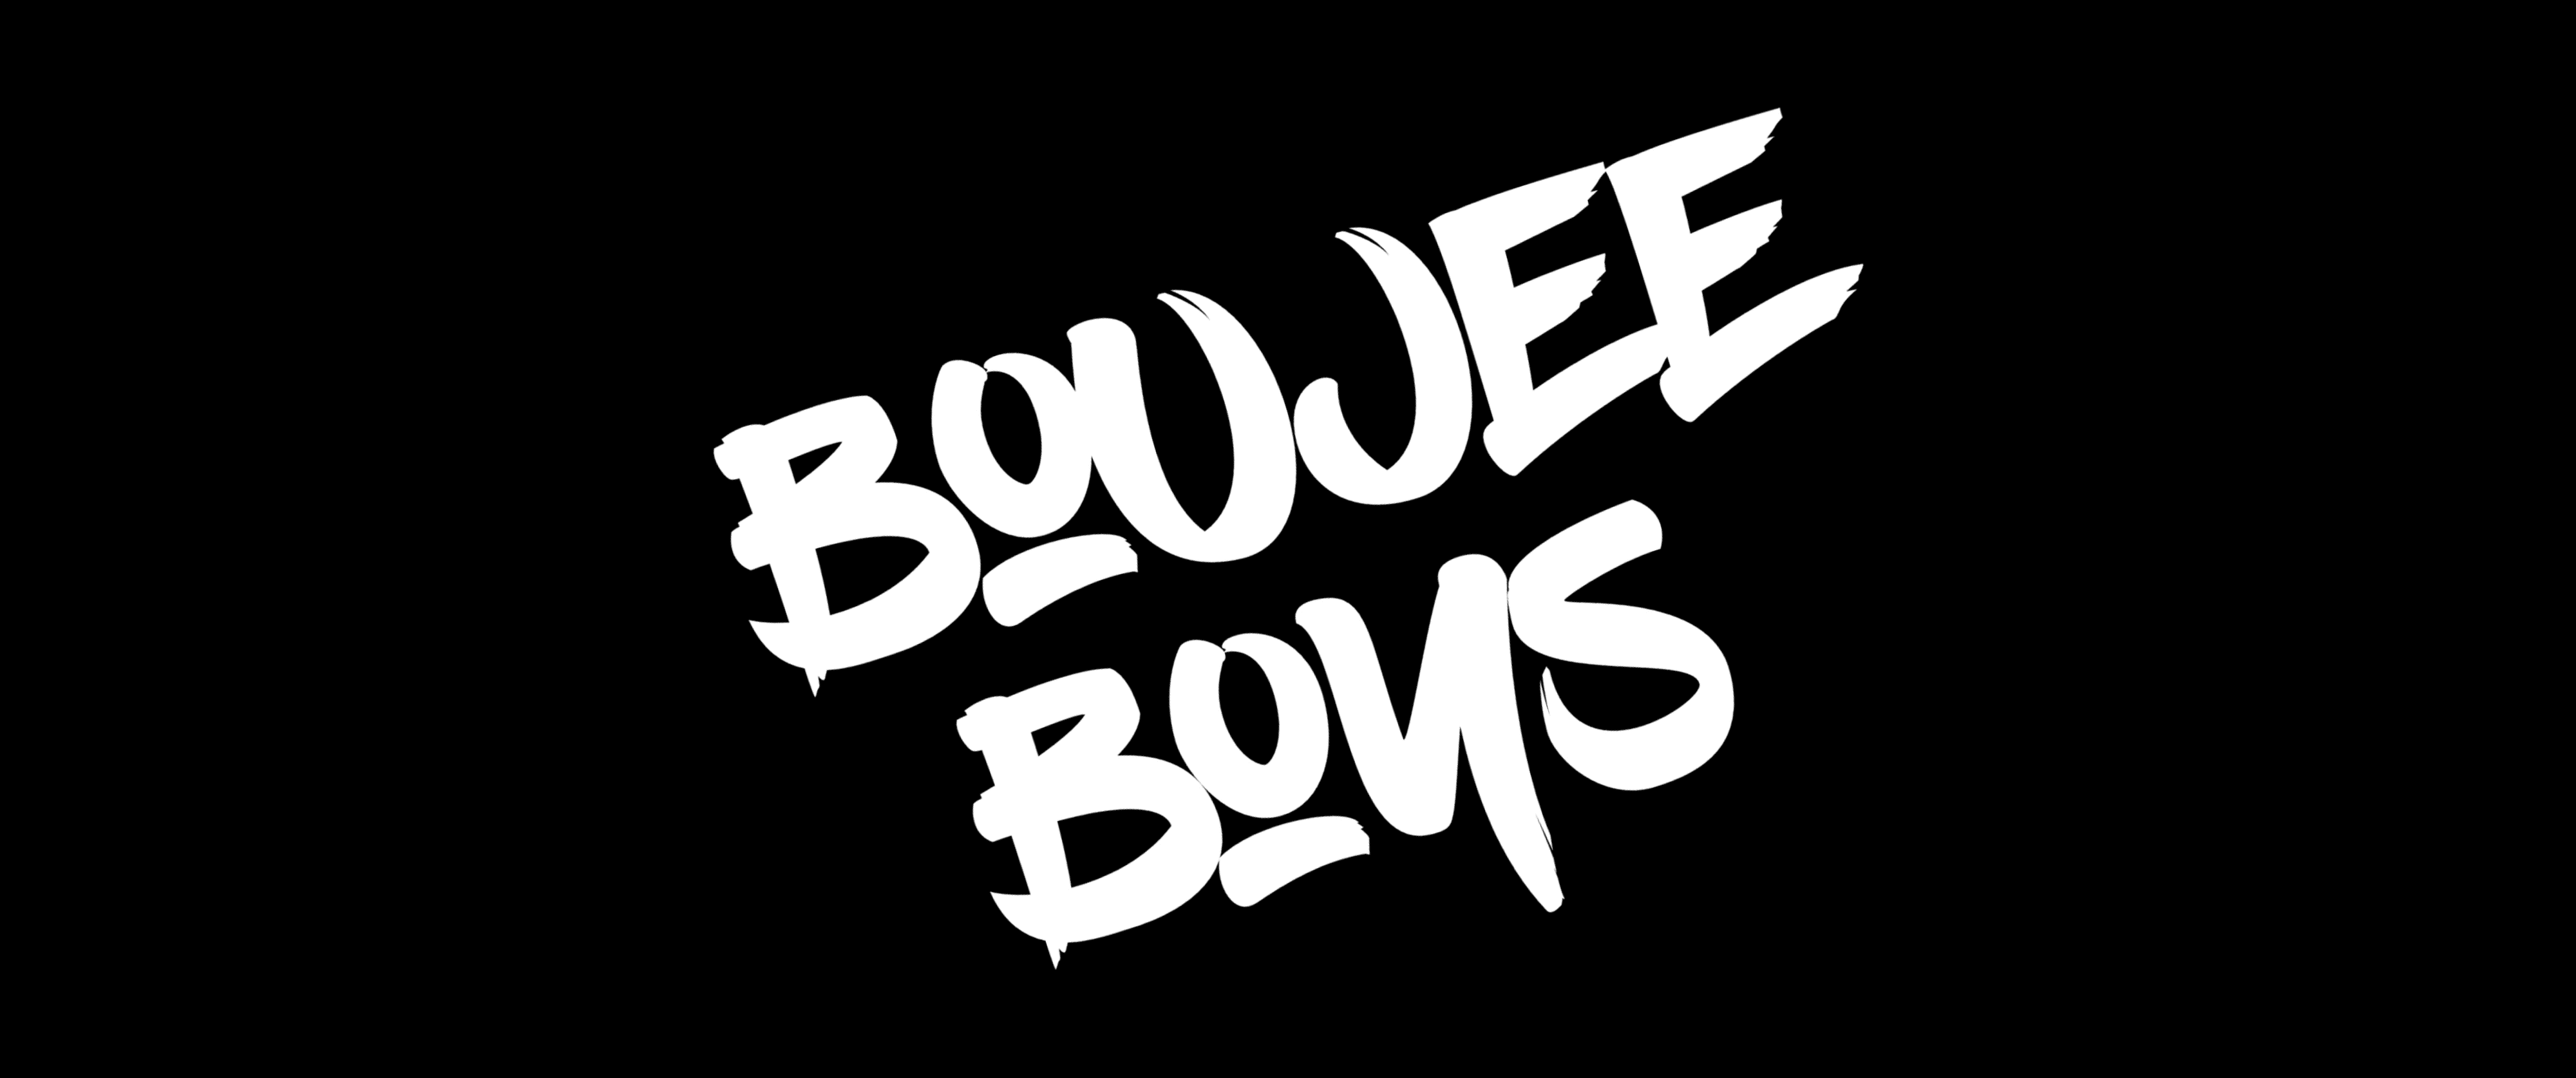 BoujeeBoys banner